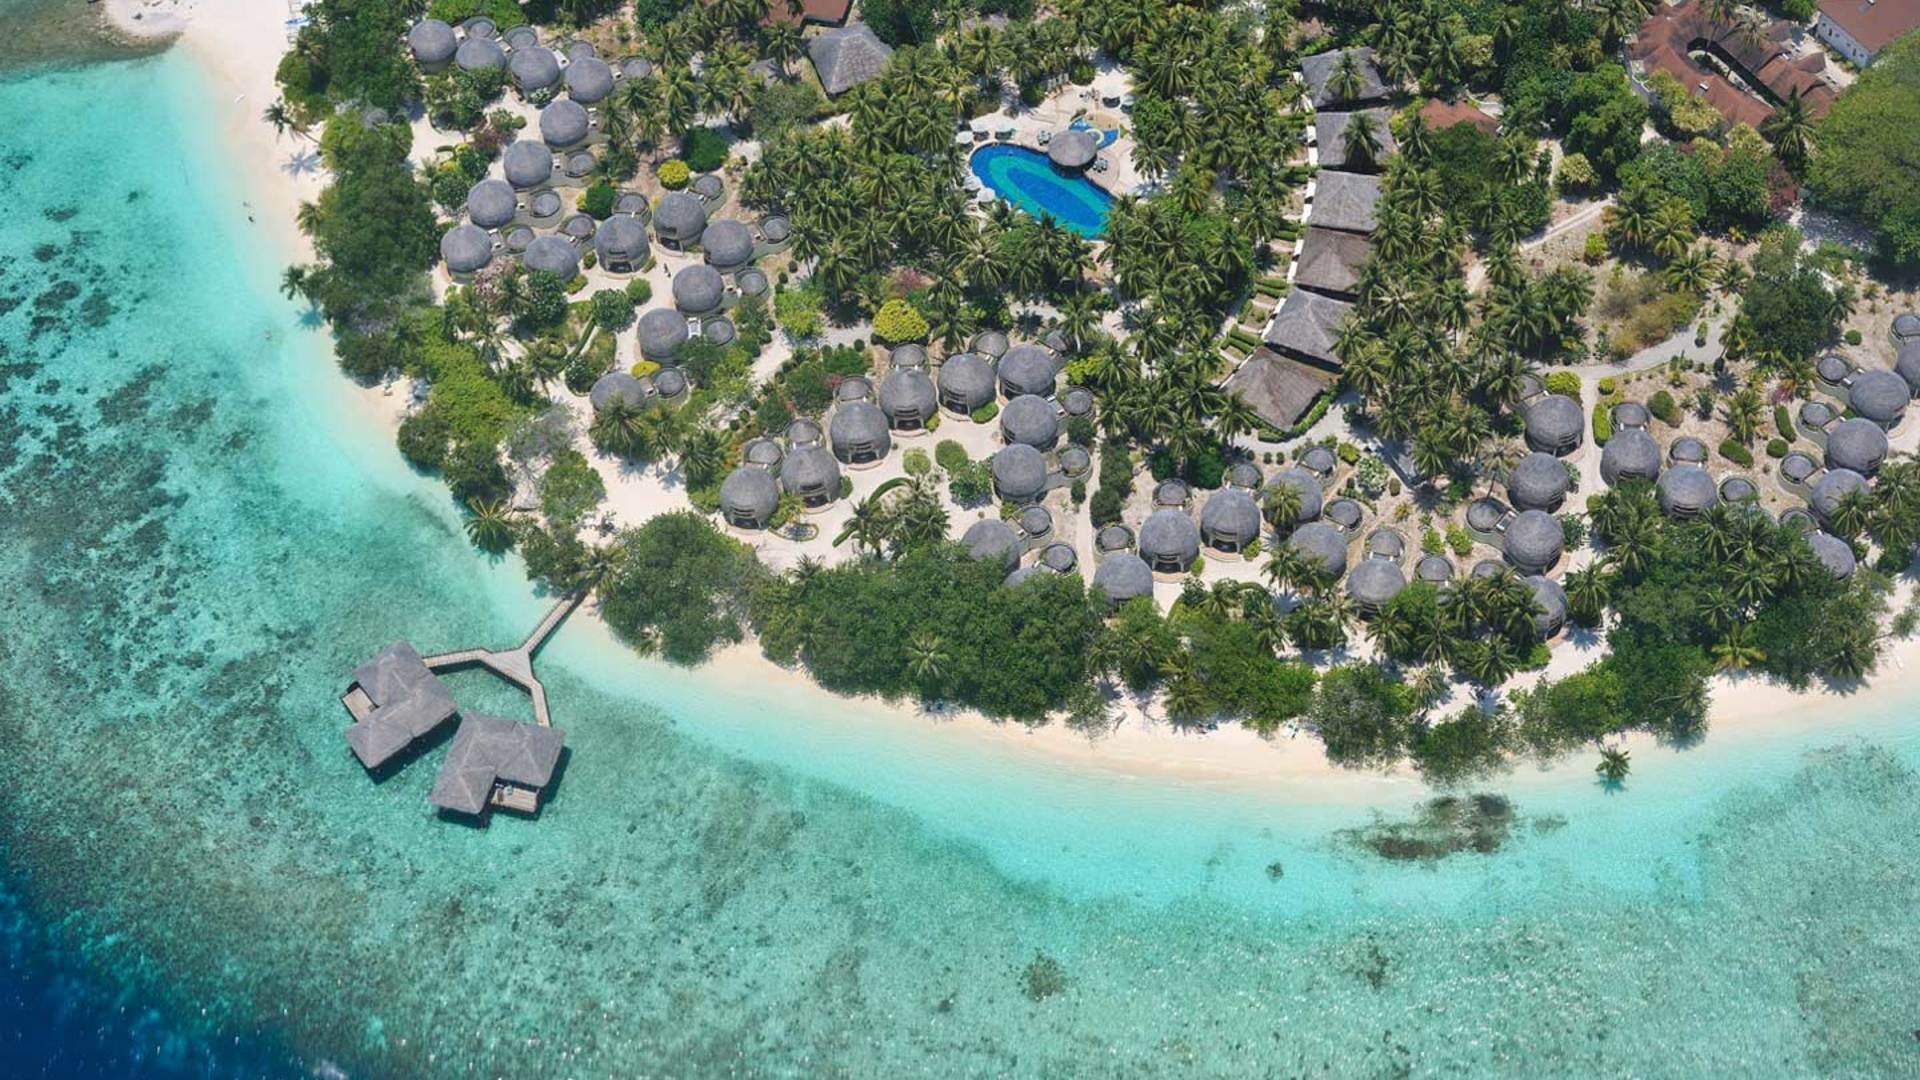 Bandos island resort. Остров Bandos Мальдивы. Отель Bandos Island Resort & Spa 4*. Мальдивы Бандос Bandos Island Resort. Отель Bandos Maldives 4.